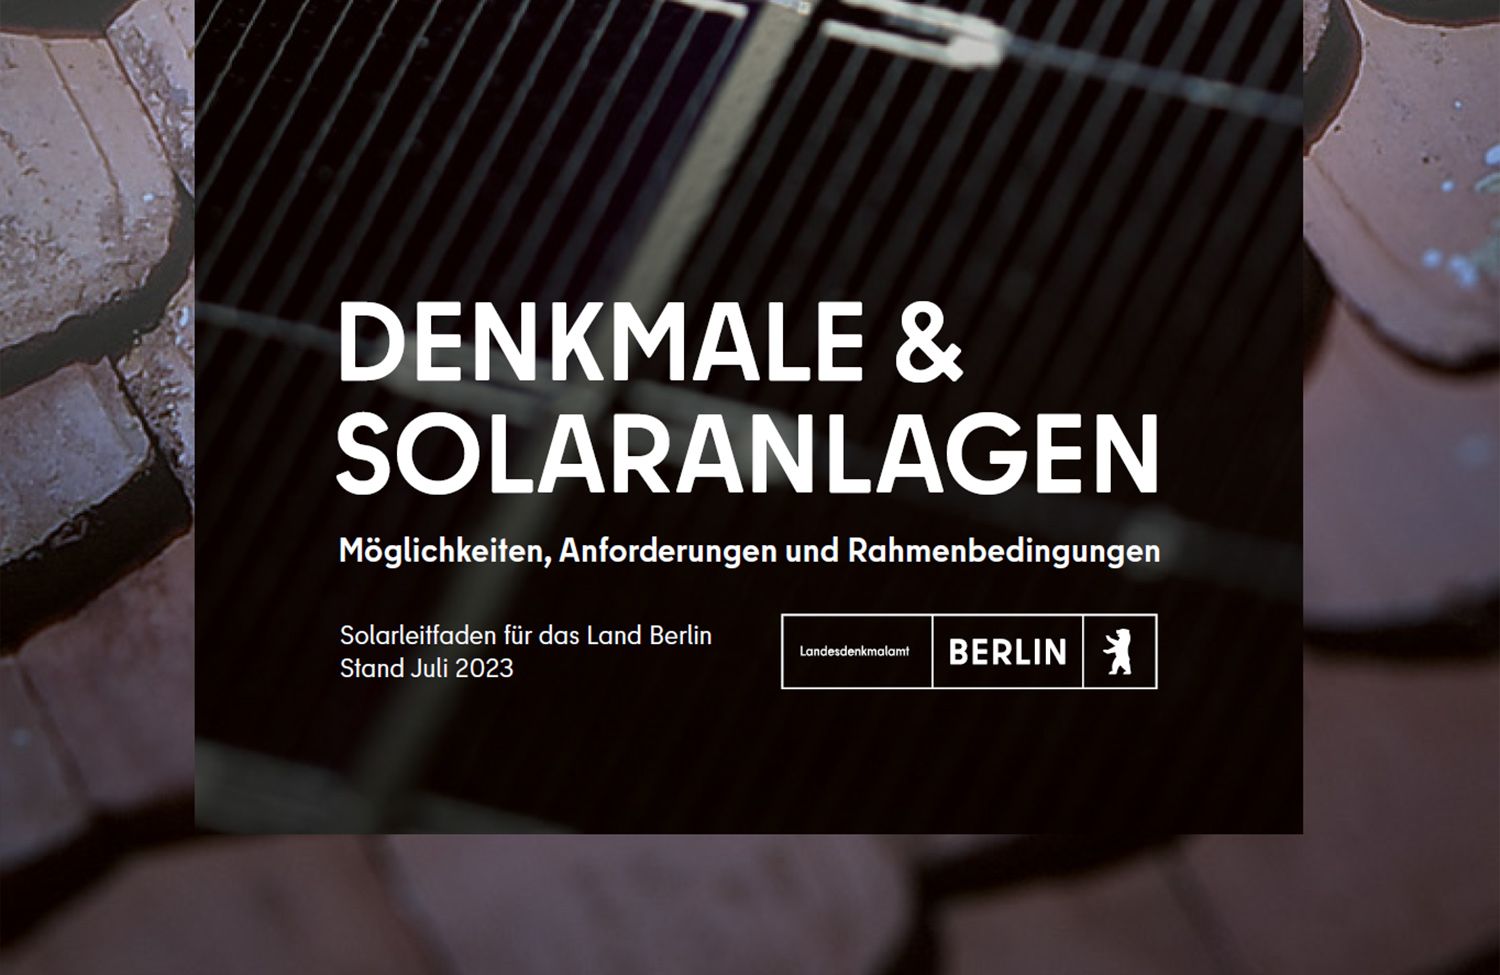 Leitfaden "Denkmale & Solaranlagen"